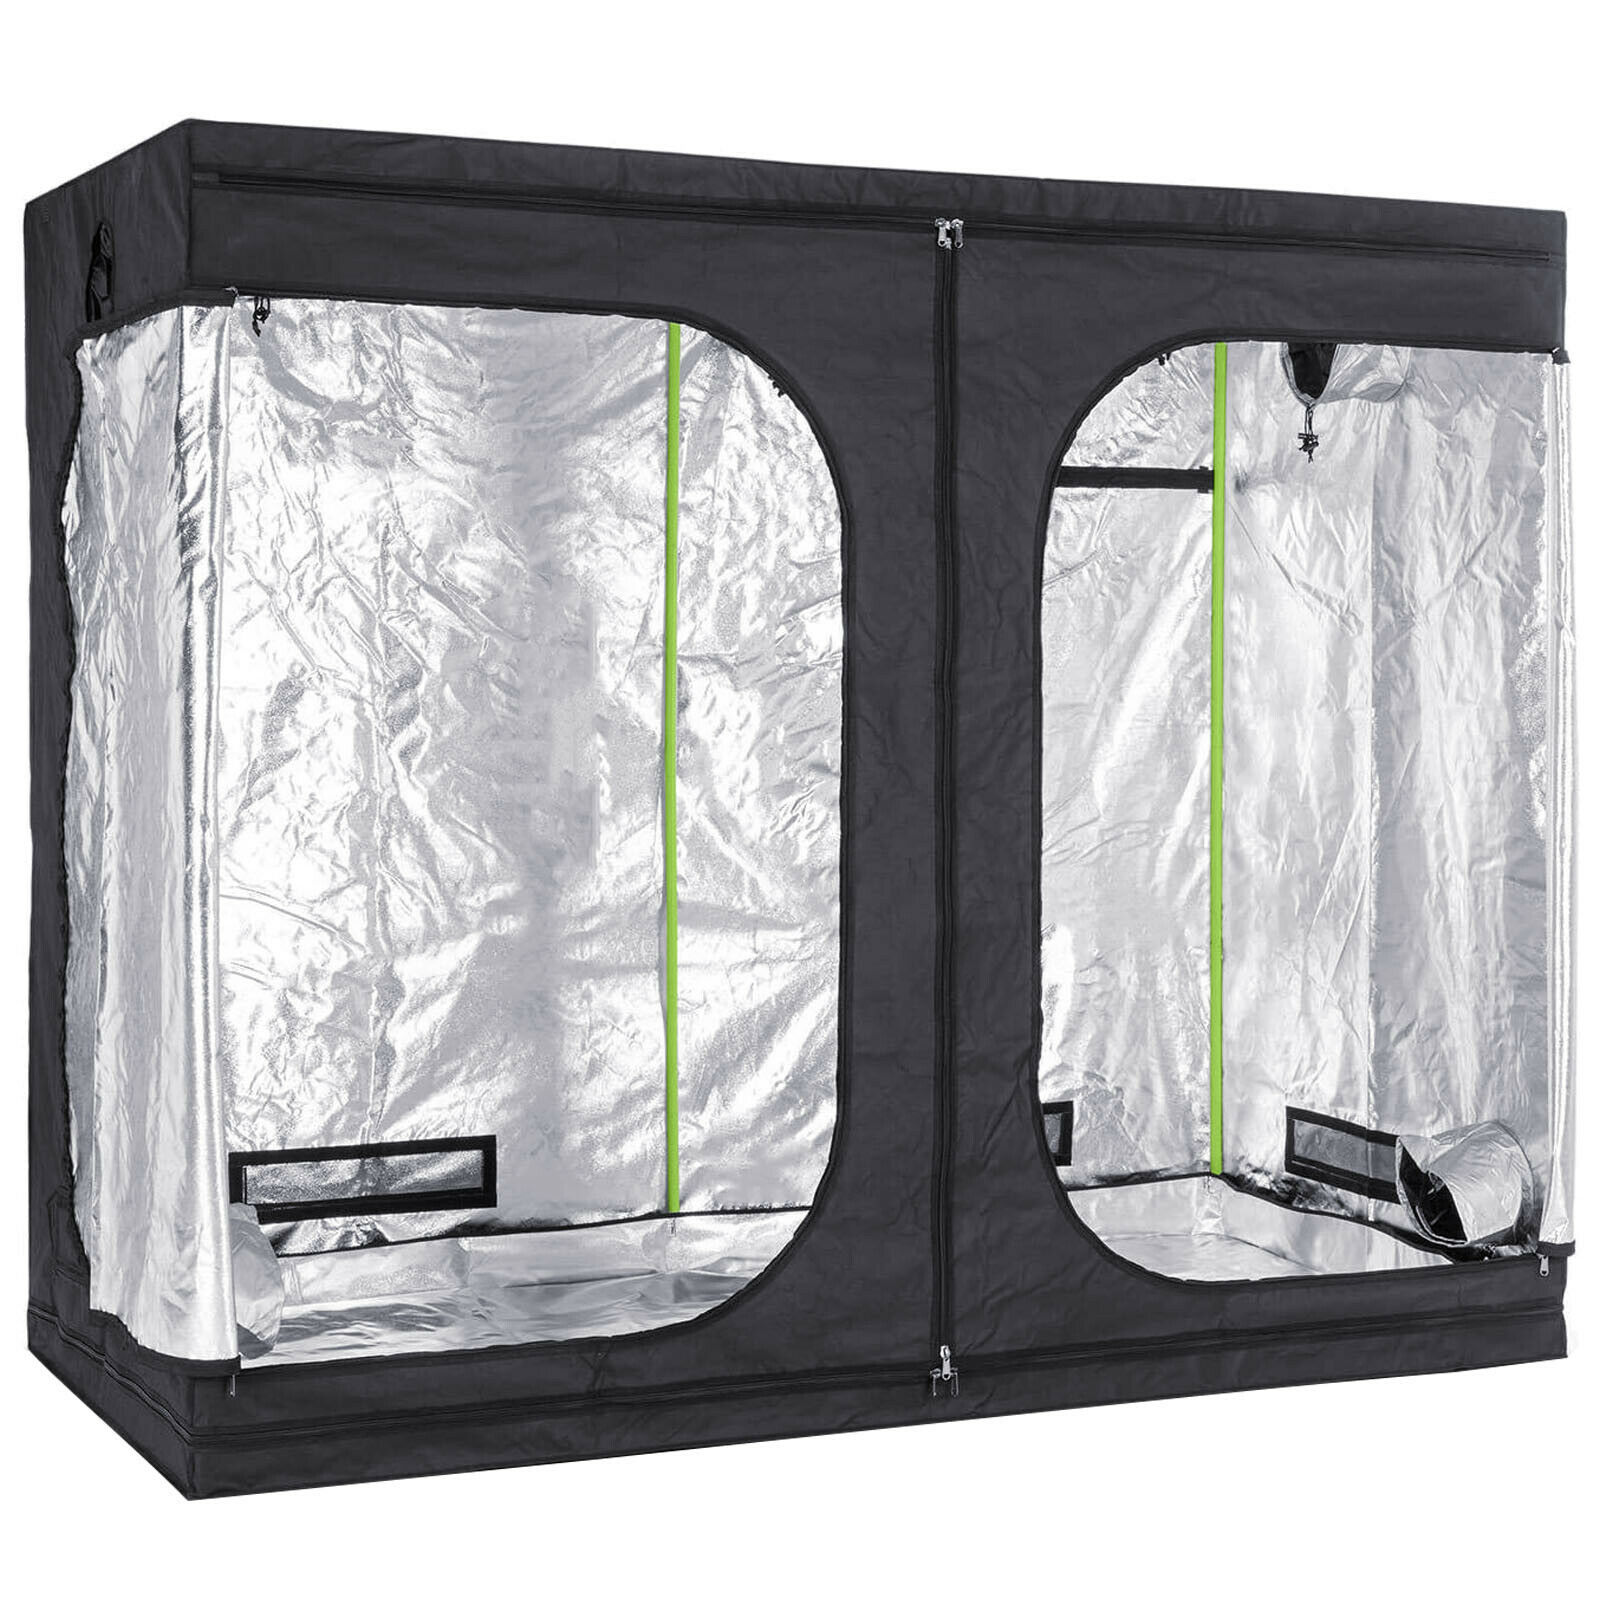 Premium 0.6m x 0.6m x 1.4m 600D Silver Mylar Grow Tent Box Hydroponics Dark Room 